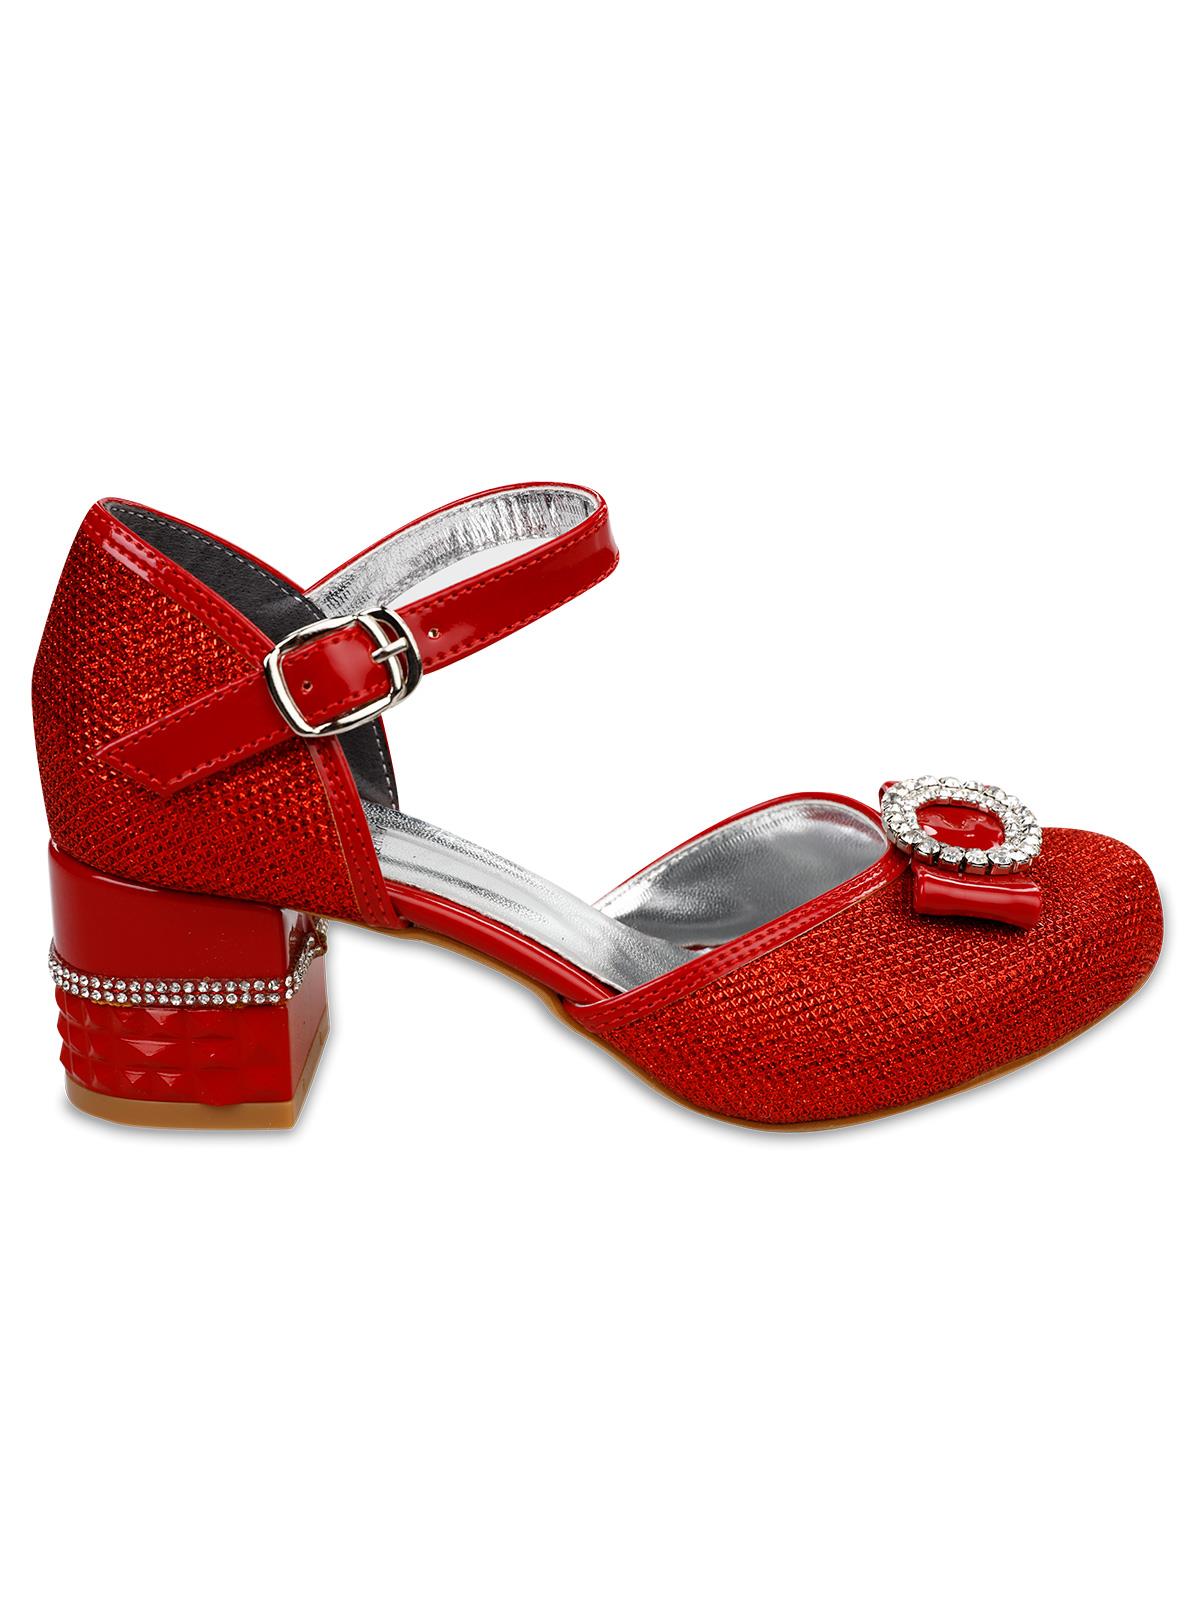 Harli Kız Çocuk Abiye Ayakkabı 33-37 Numara Kırmızı